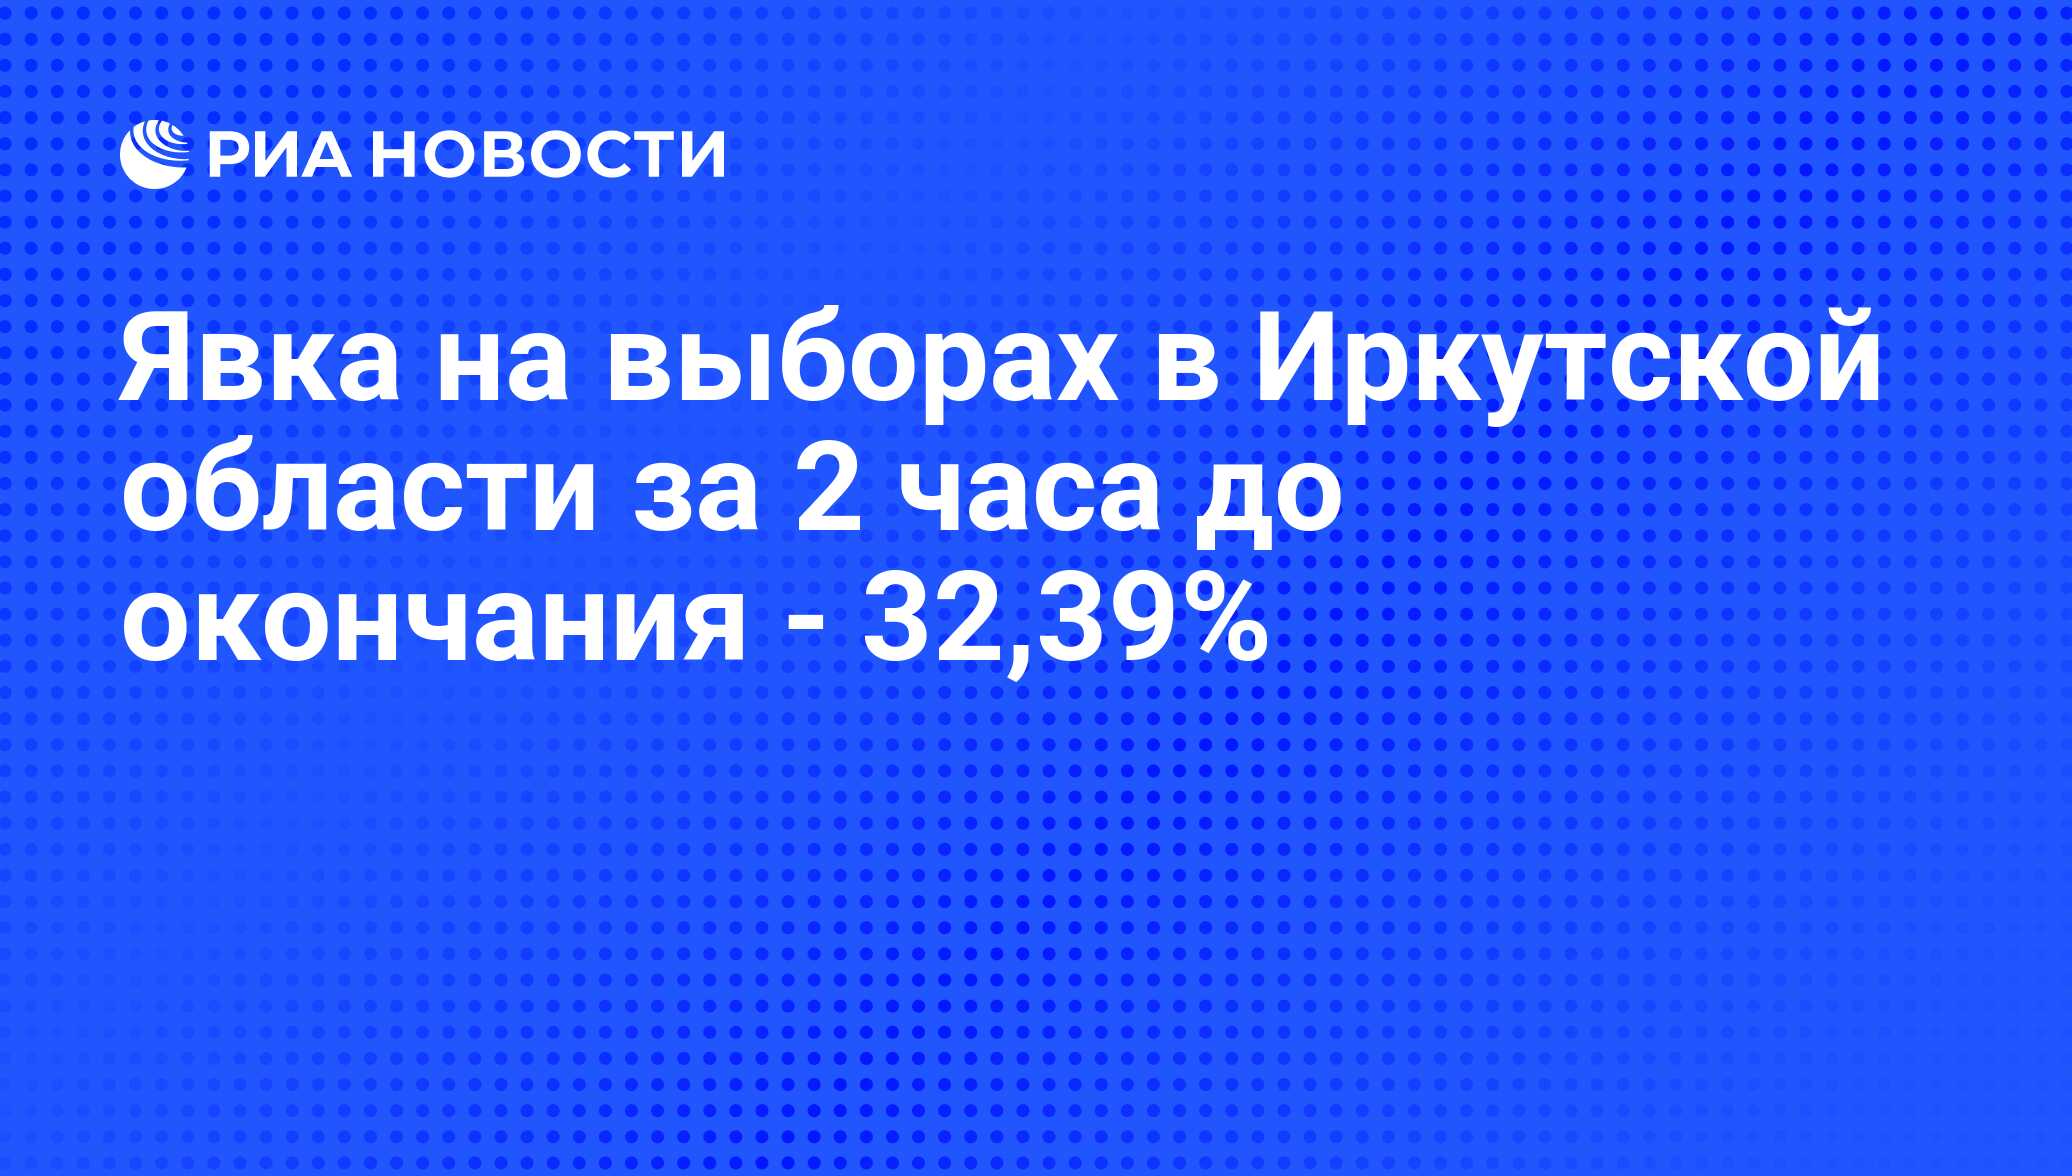 Итоги голосования в иркутской области. Результаты выборов в Иркутской области.